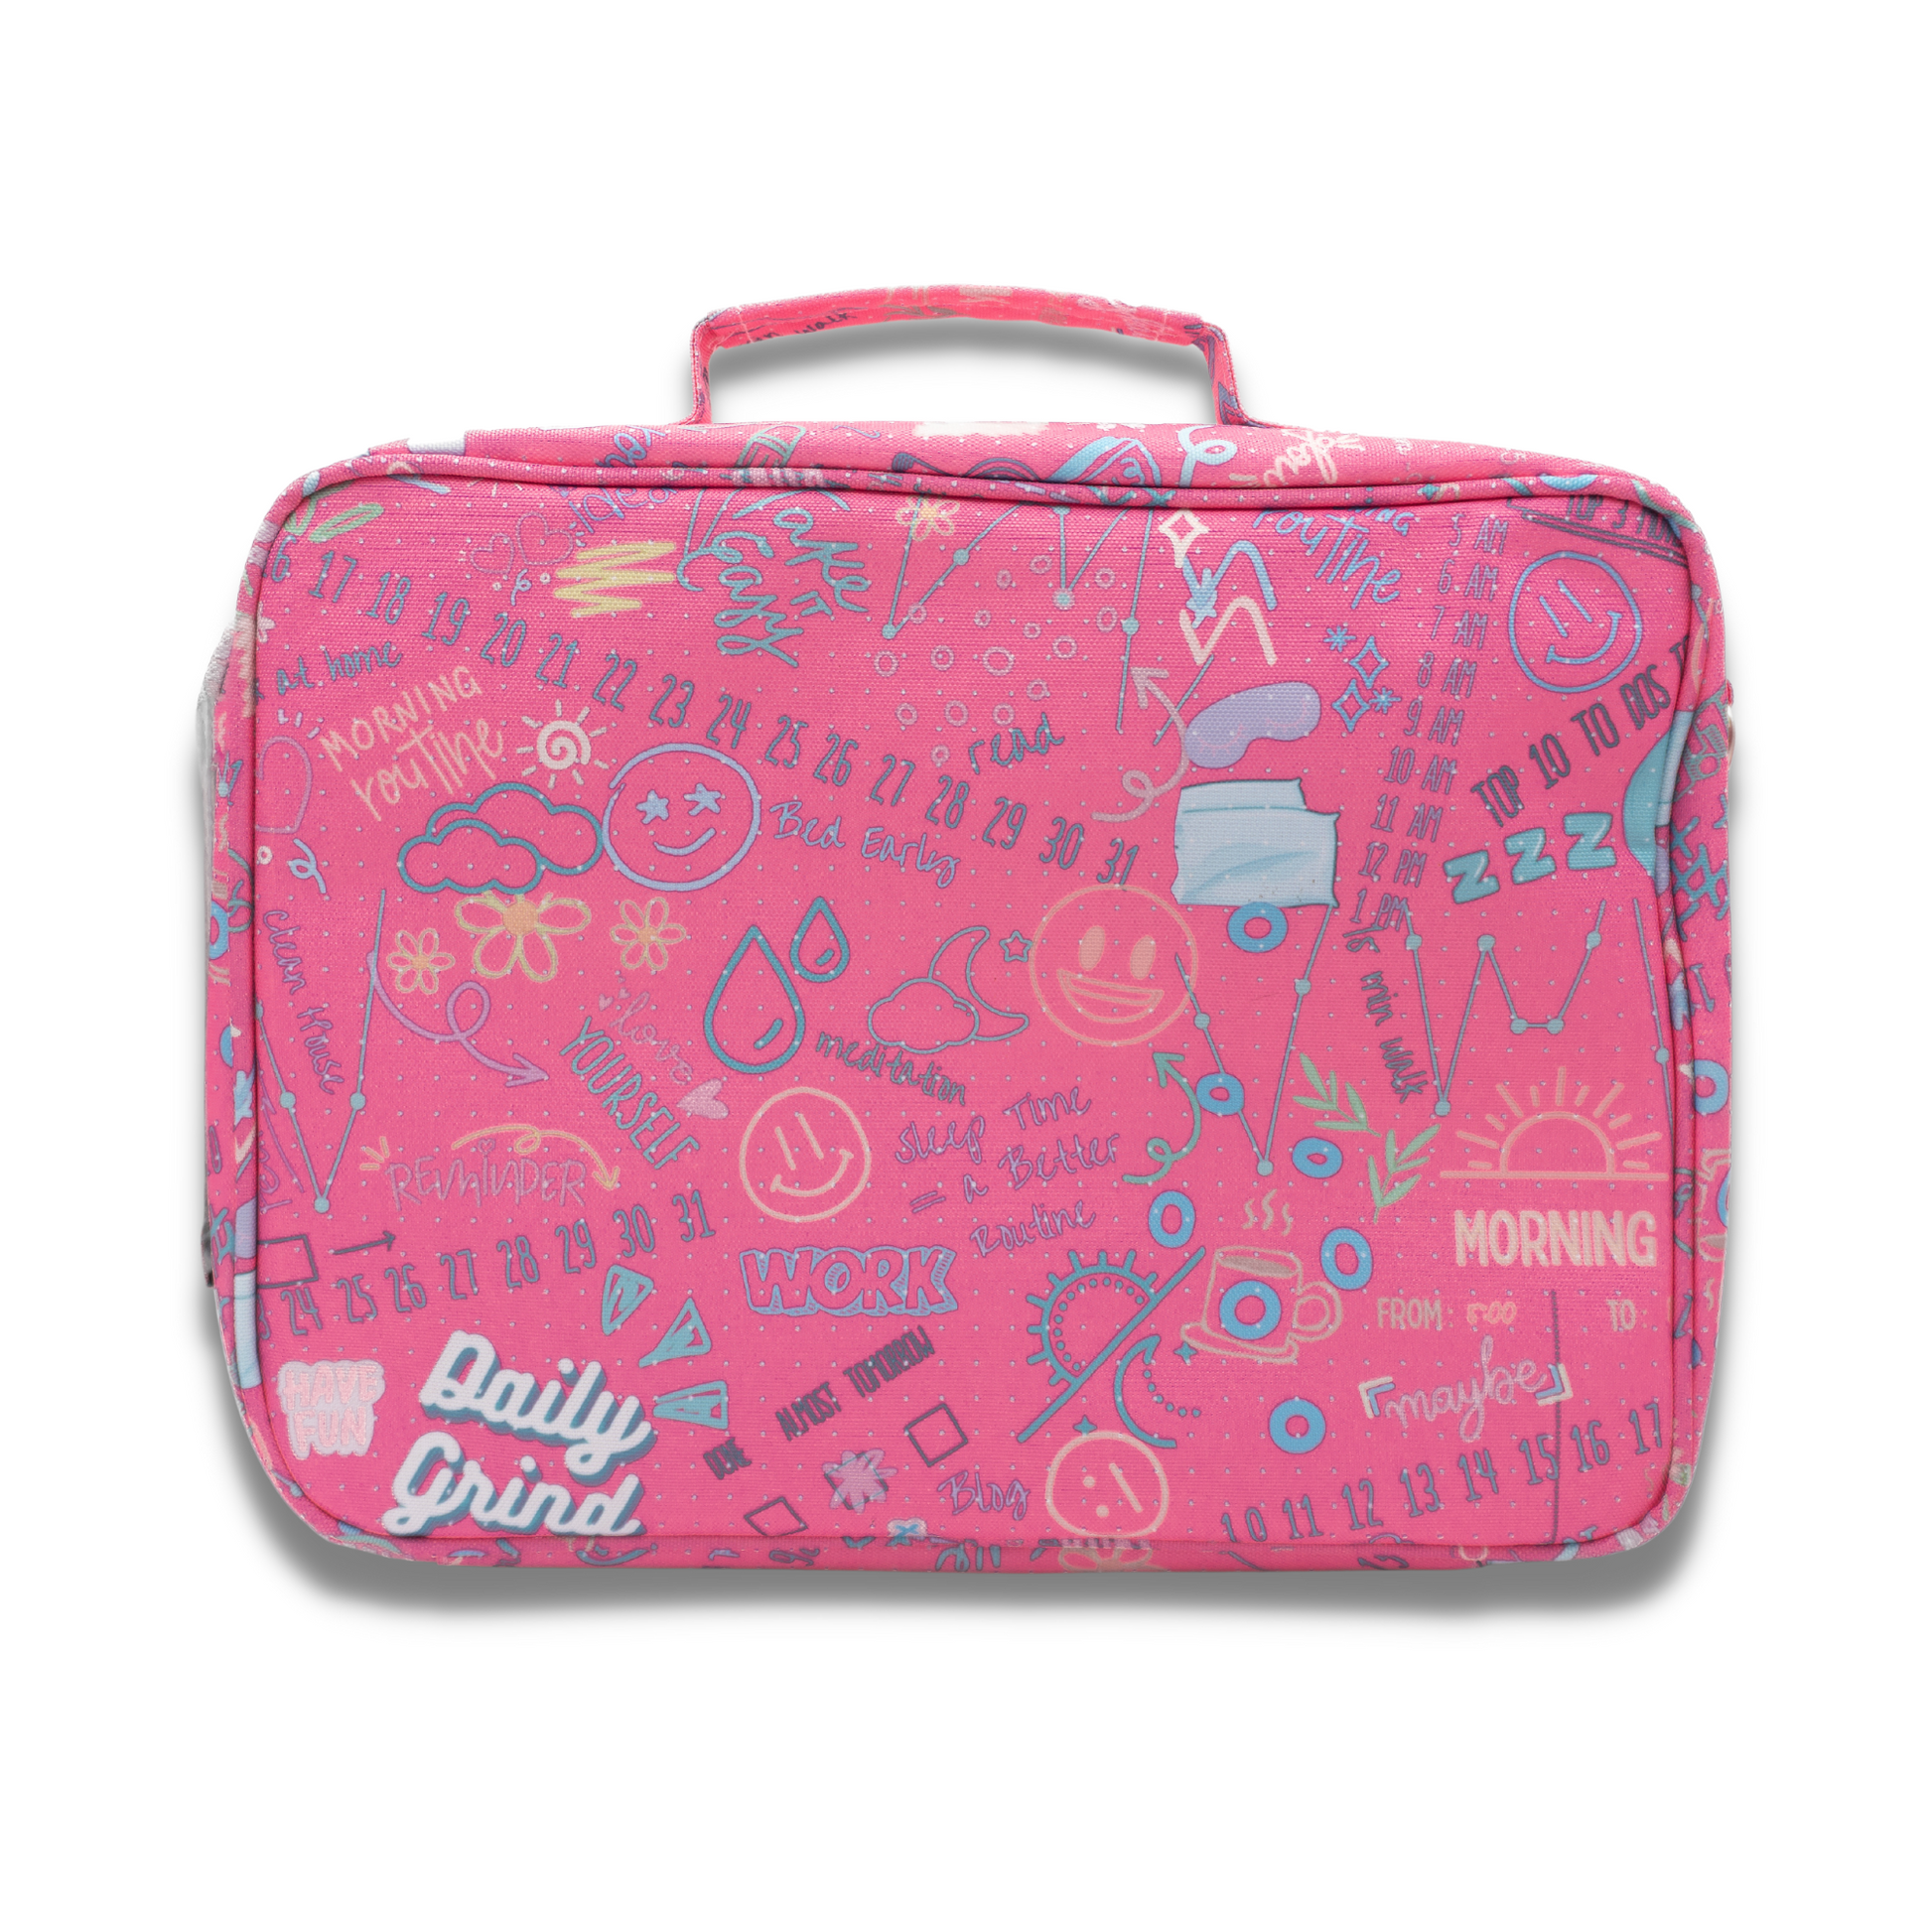 Back of pink travel planner case